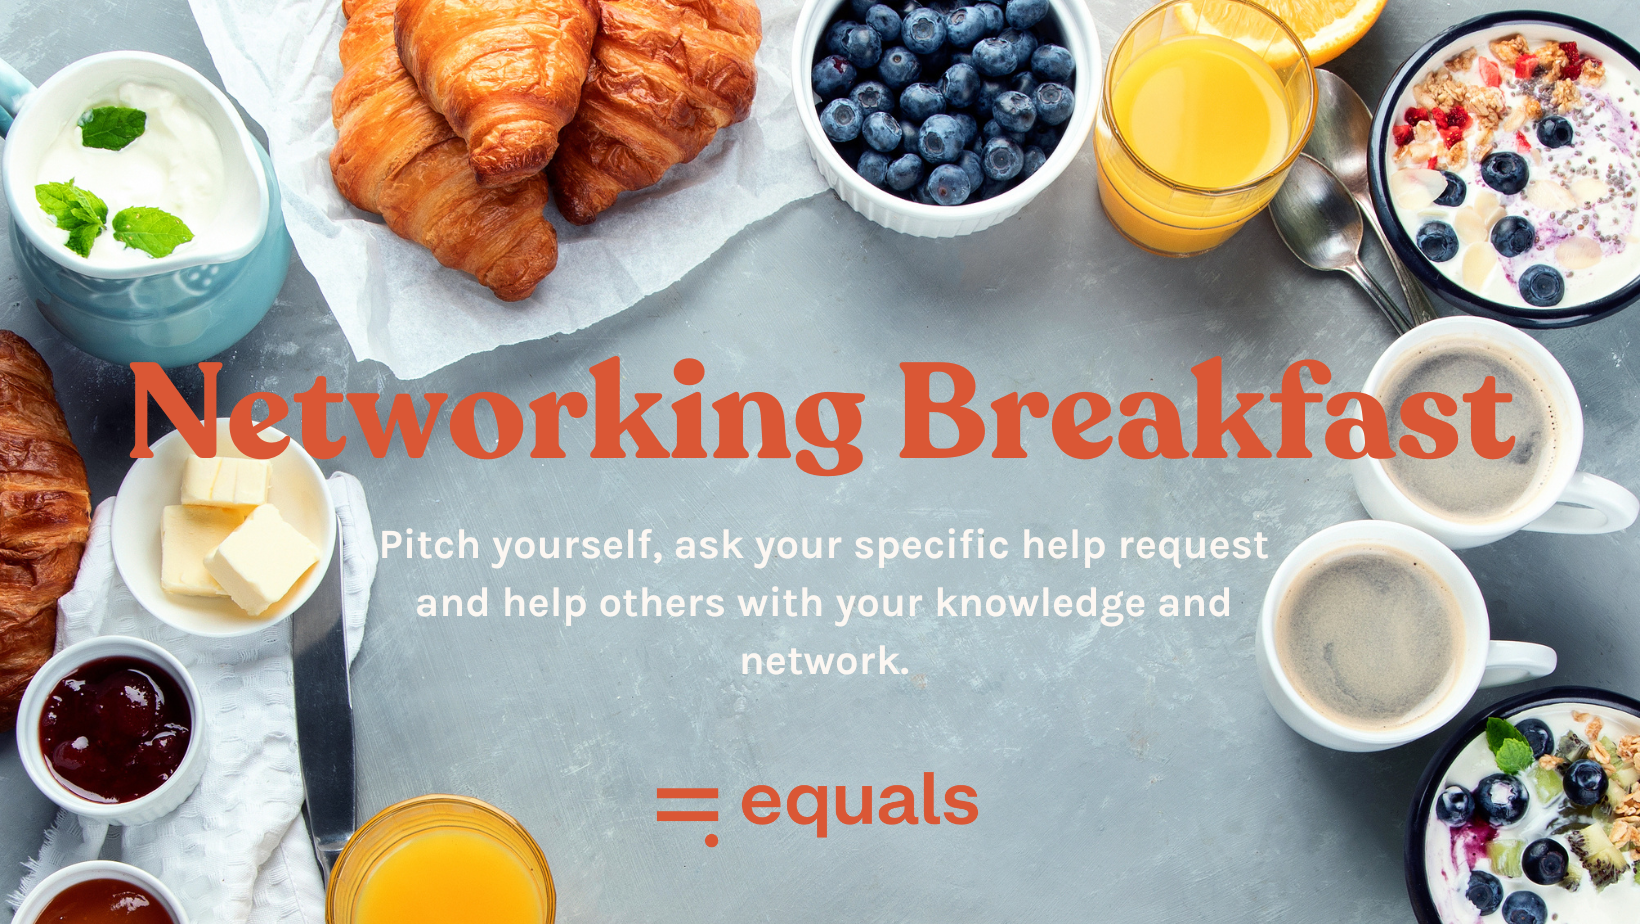 Networking Breakfast